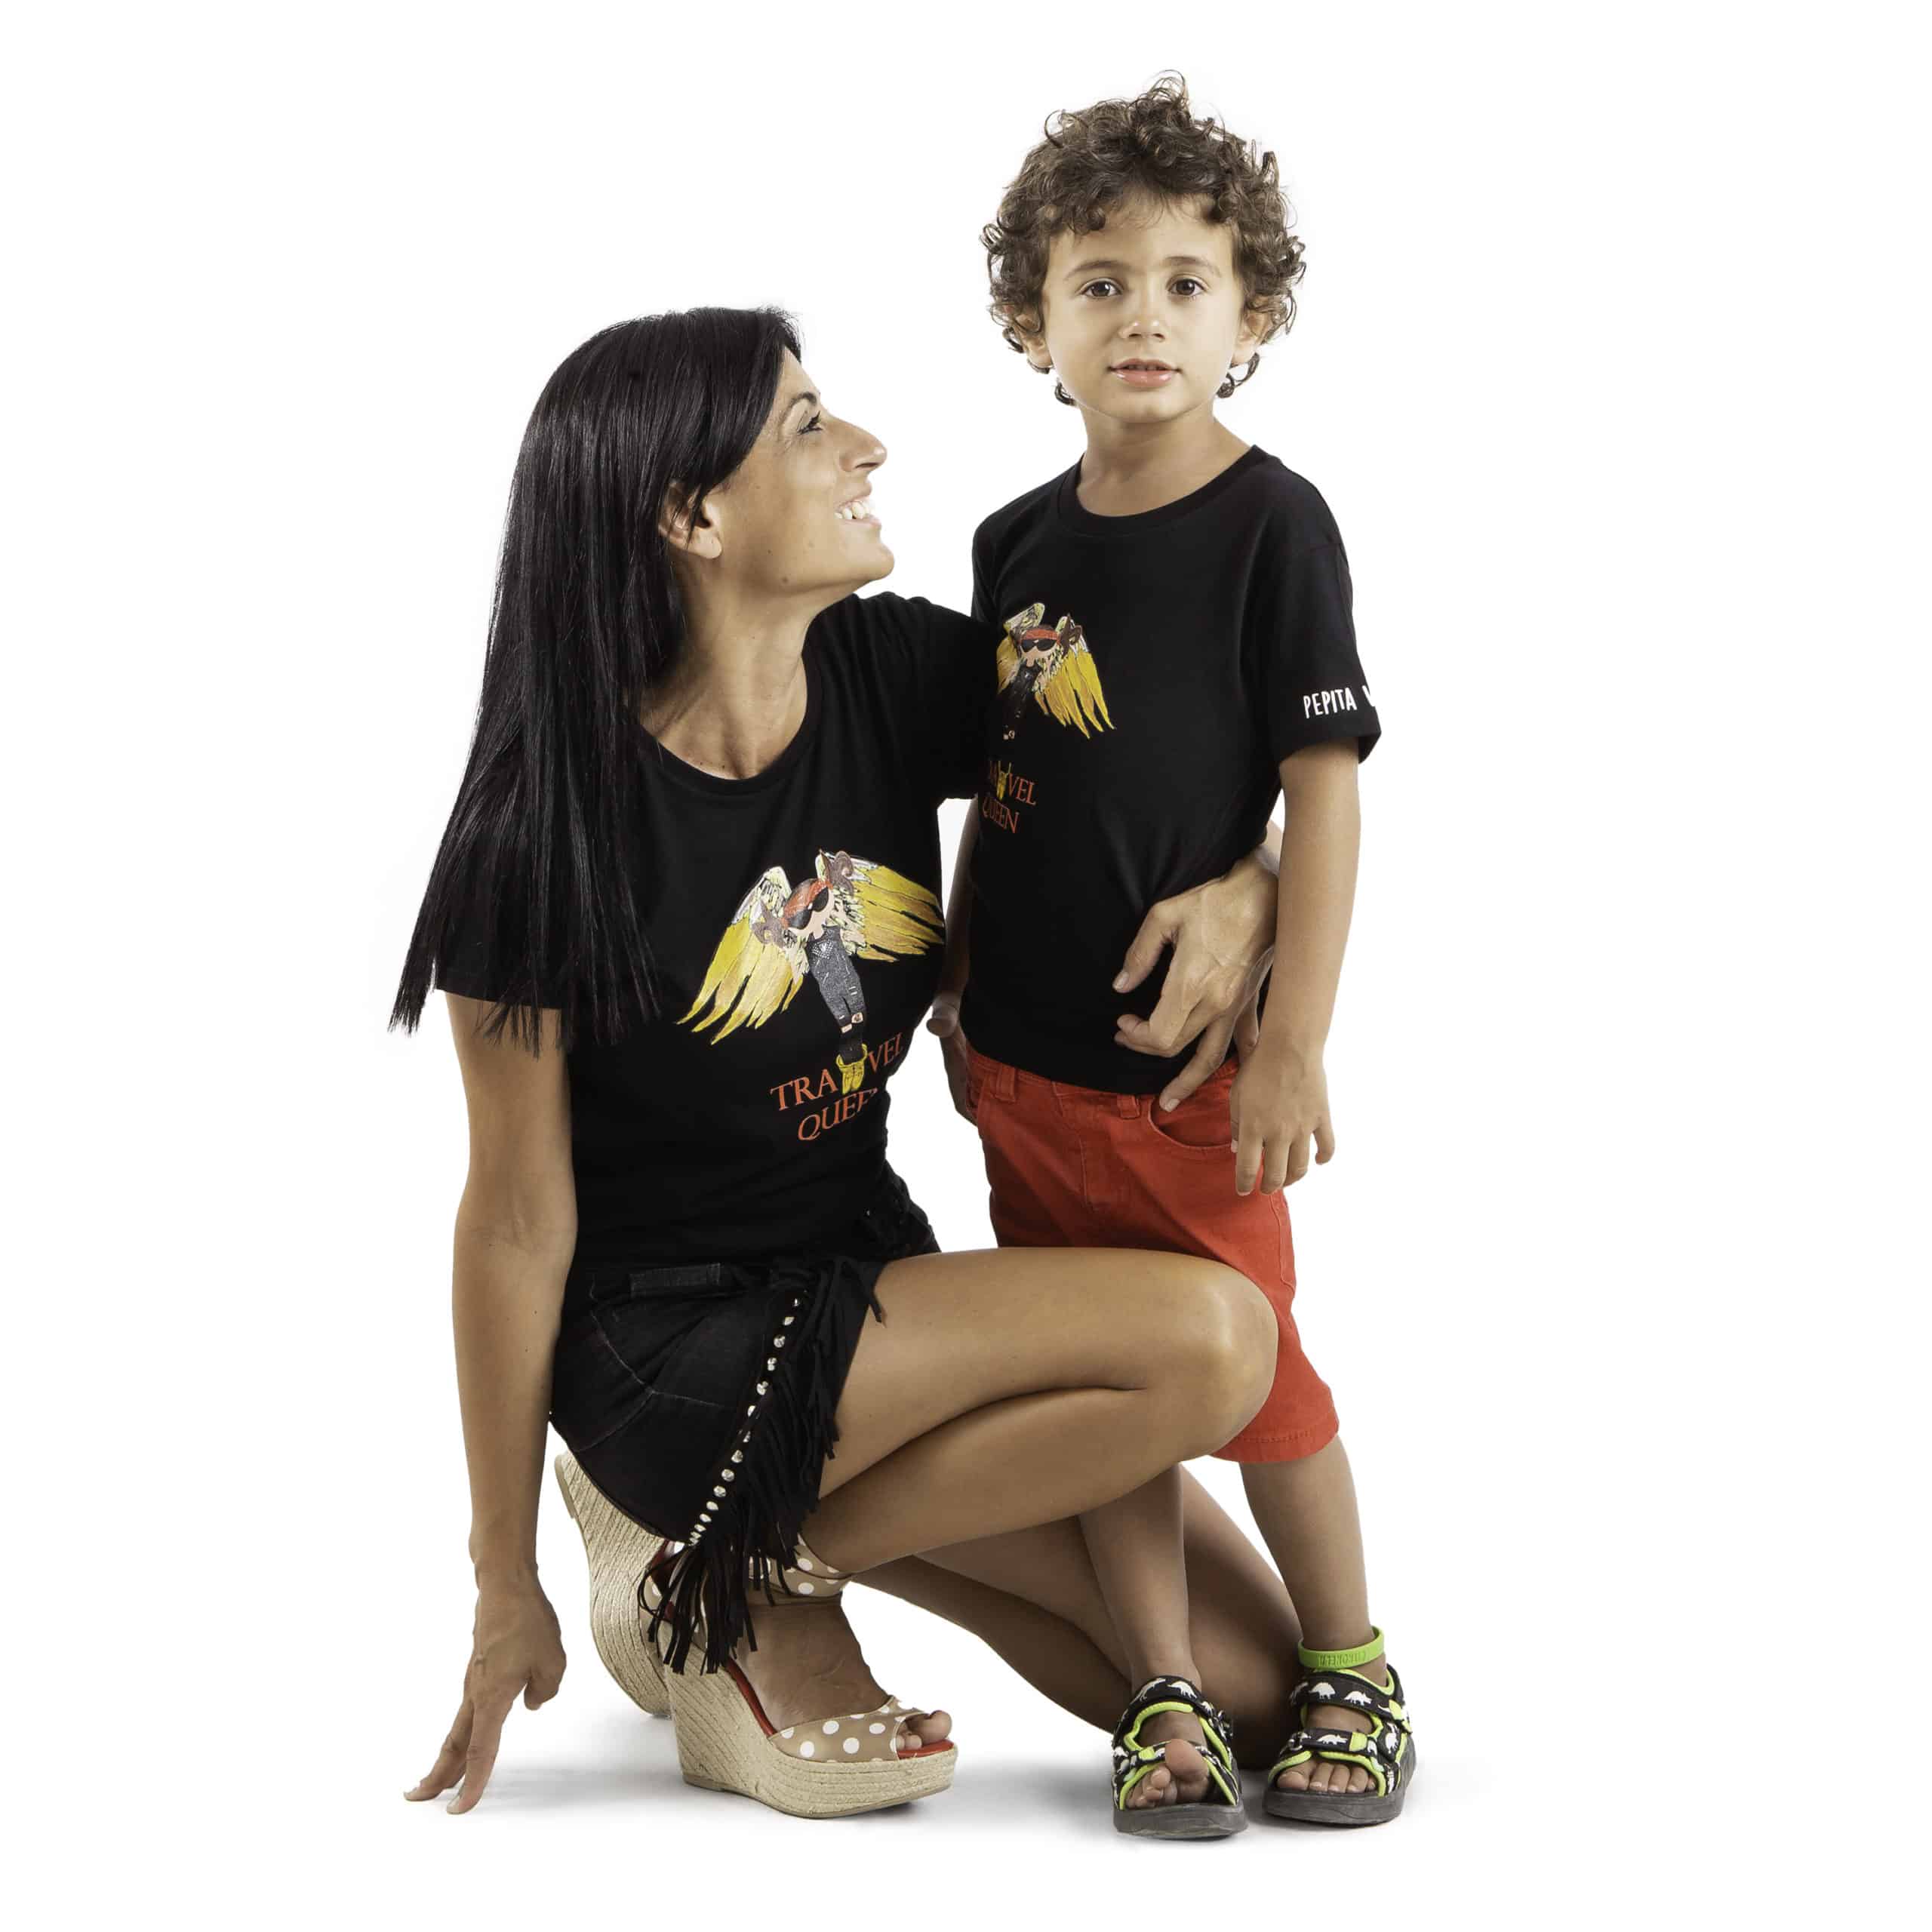 Camiseta de algodón orgánico modelo Travel Queen para los más viajeros en color negro. Foto modelos adulto chica y niño